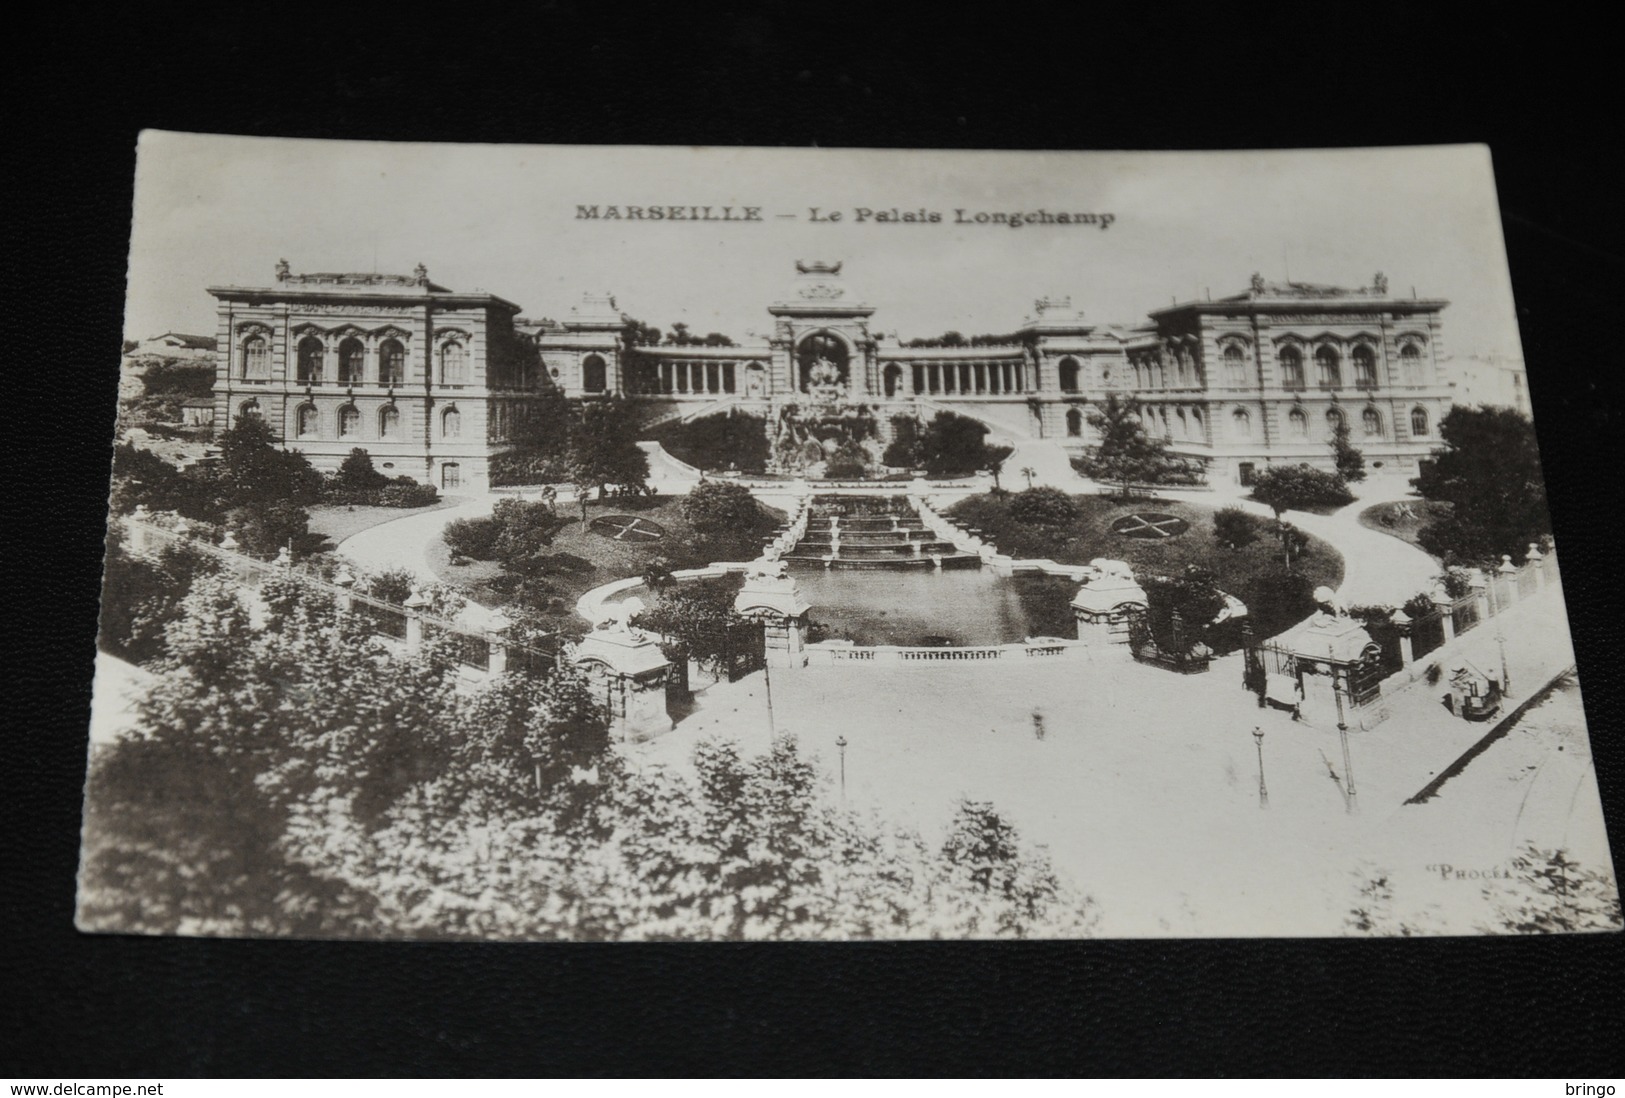 185-  Marseille, Le Palais Longchamp - Sonstige Sehenswürdigkeiten